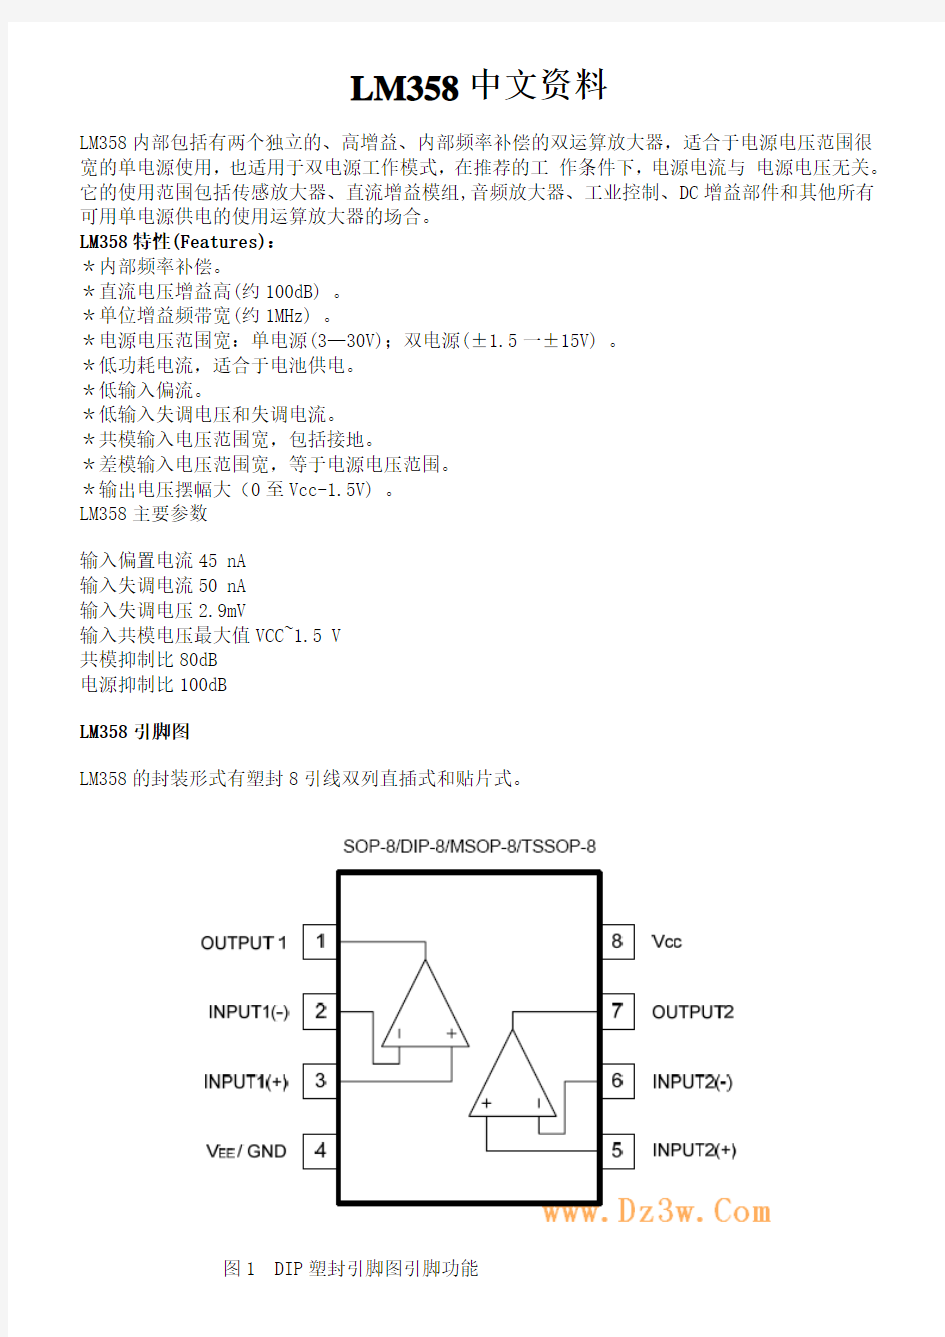 LM358中文资料